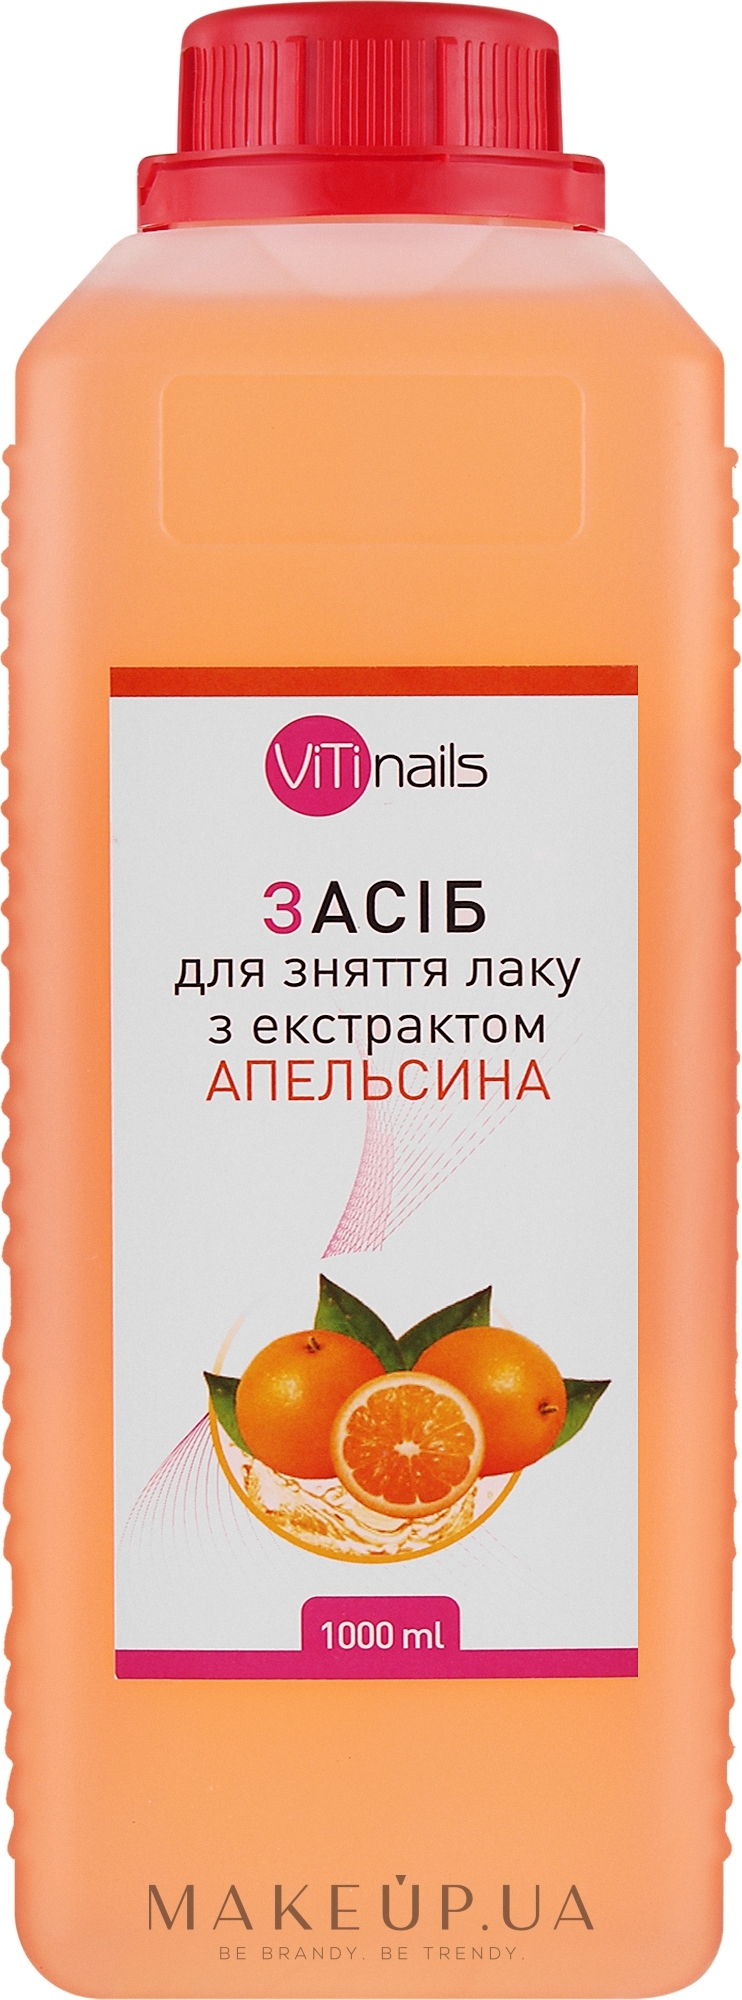 Рідина для зняття лаку з екстрактом апельсина, кришка з контролем відкривання - ViTinails — фото 1000ml